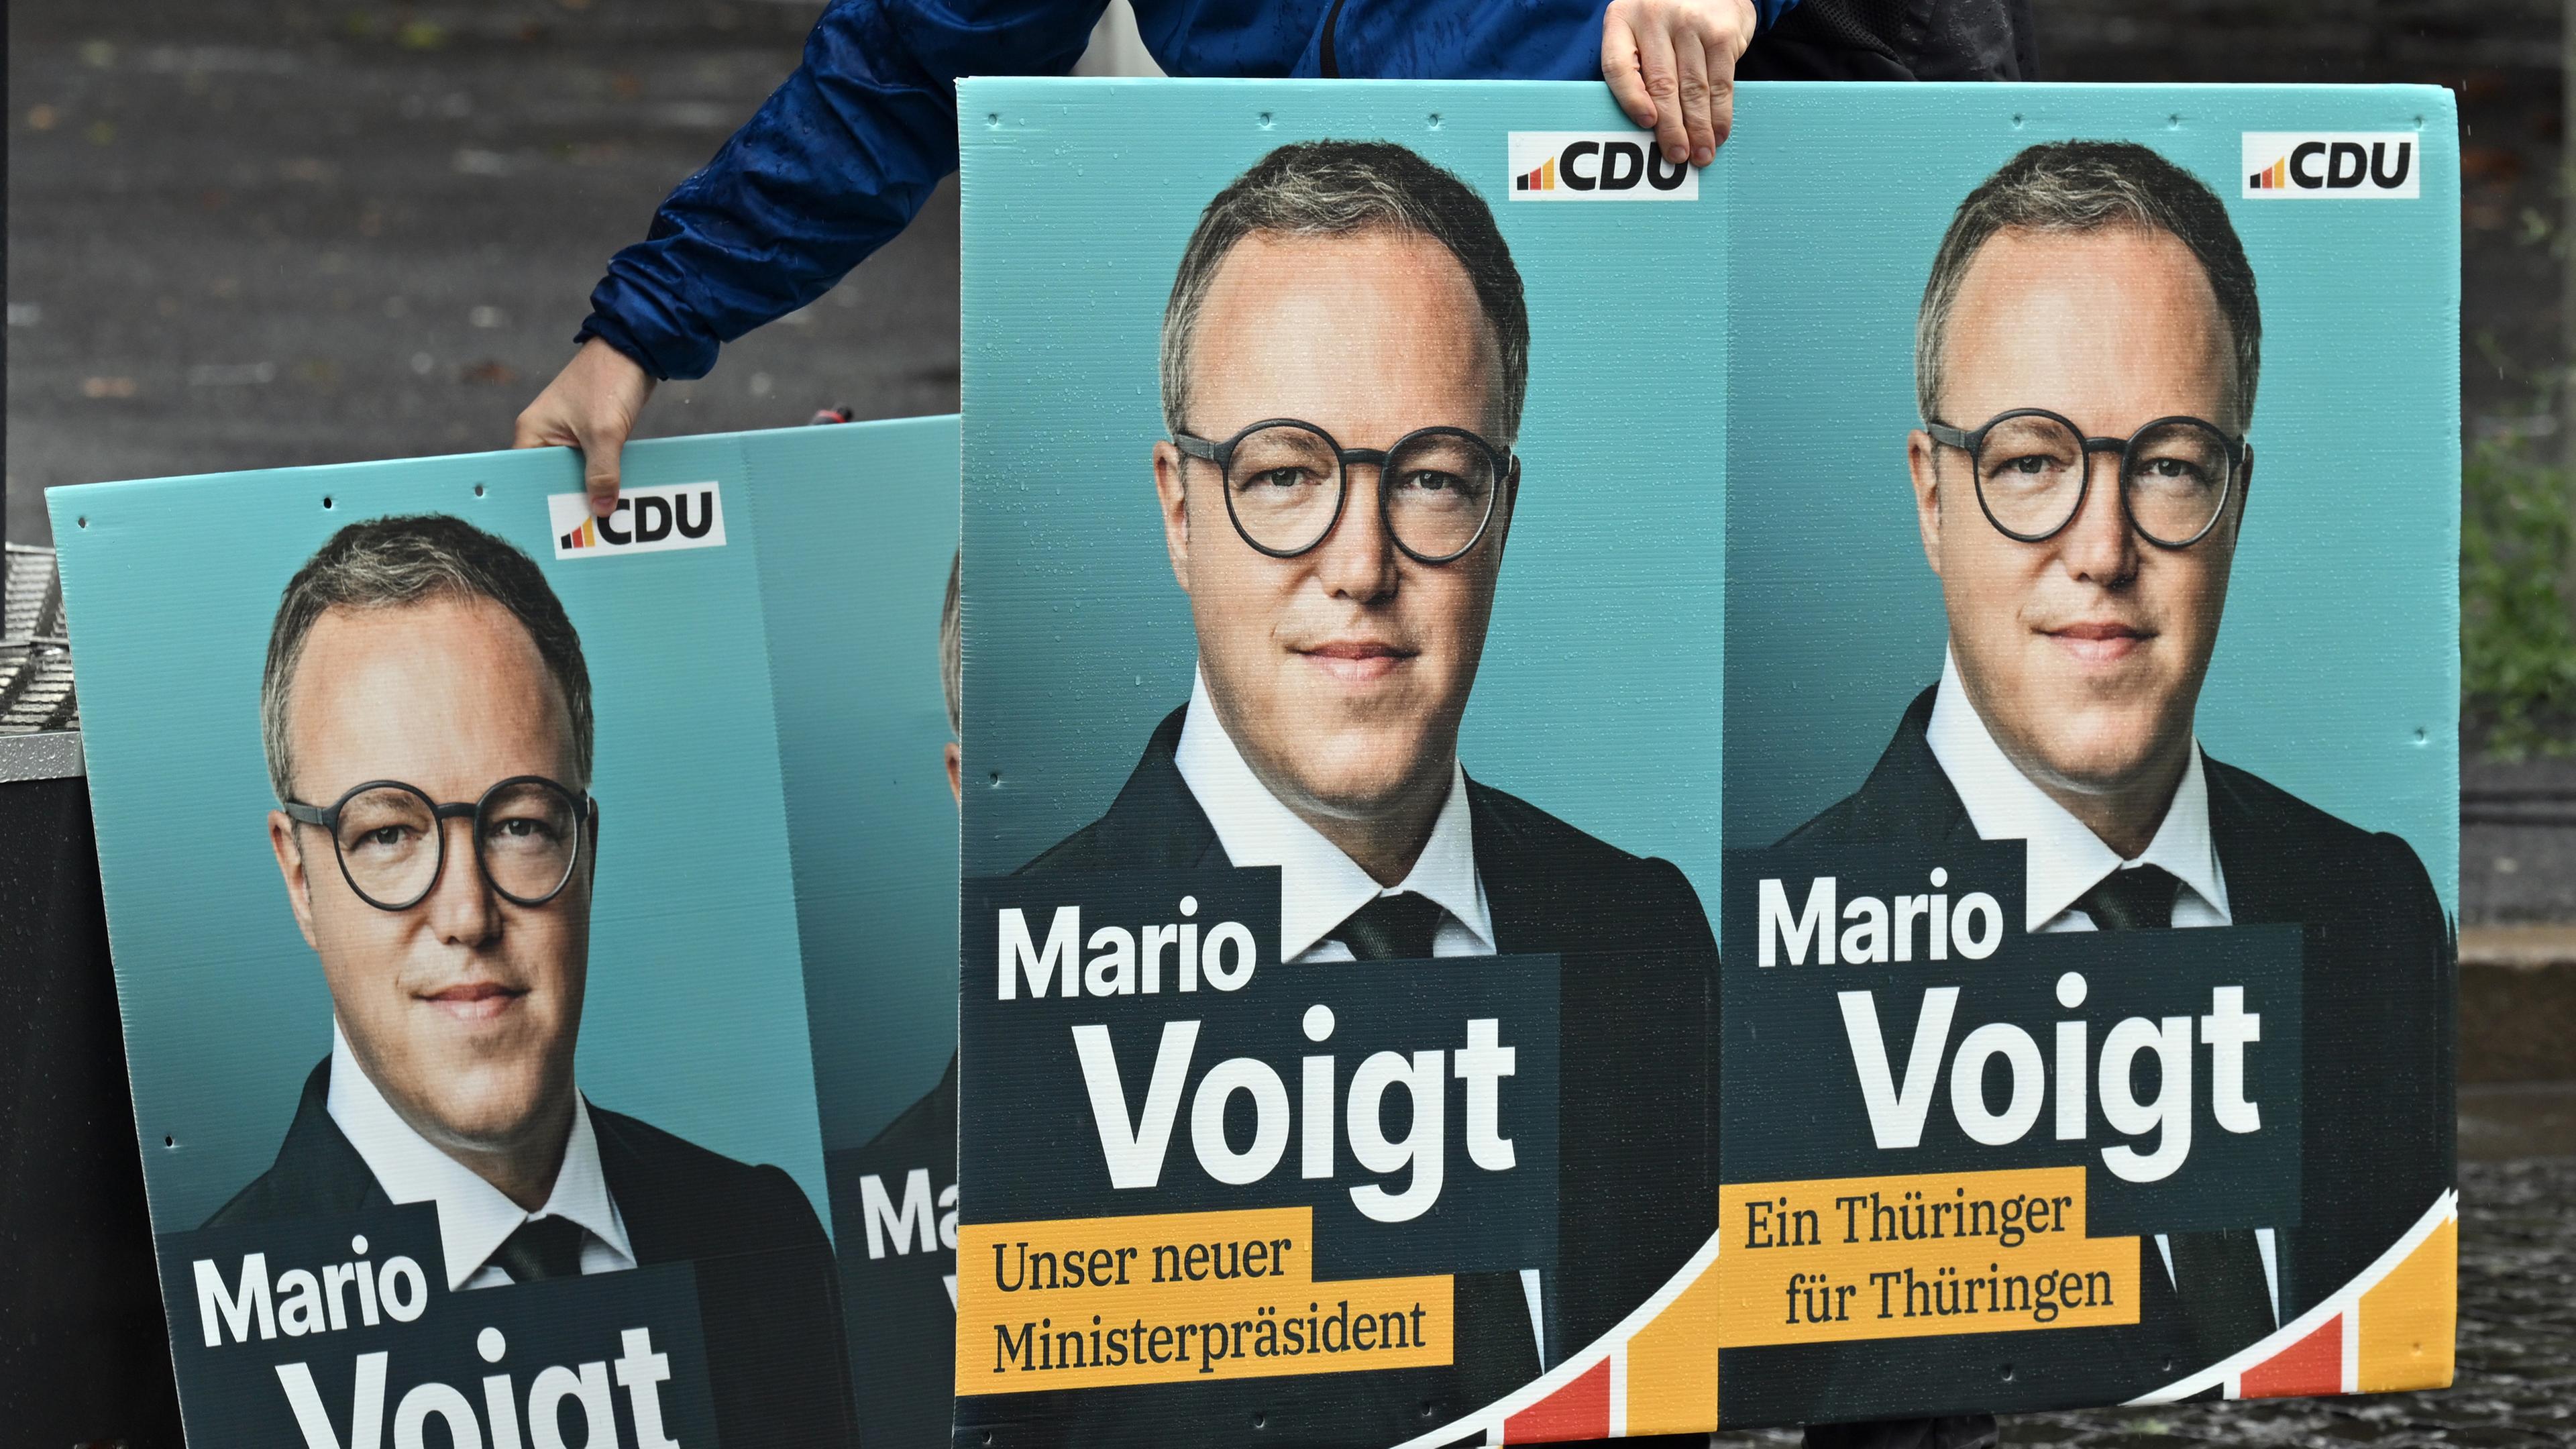 Der CDU-Landesvorsitzende und Spitzenkandidat zur Landtagswahl in Thüringen, Mario Voigt, ist auf Wahlplakaten zu sehen.